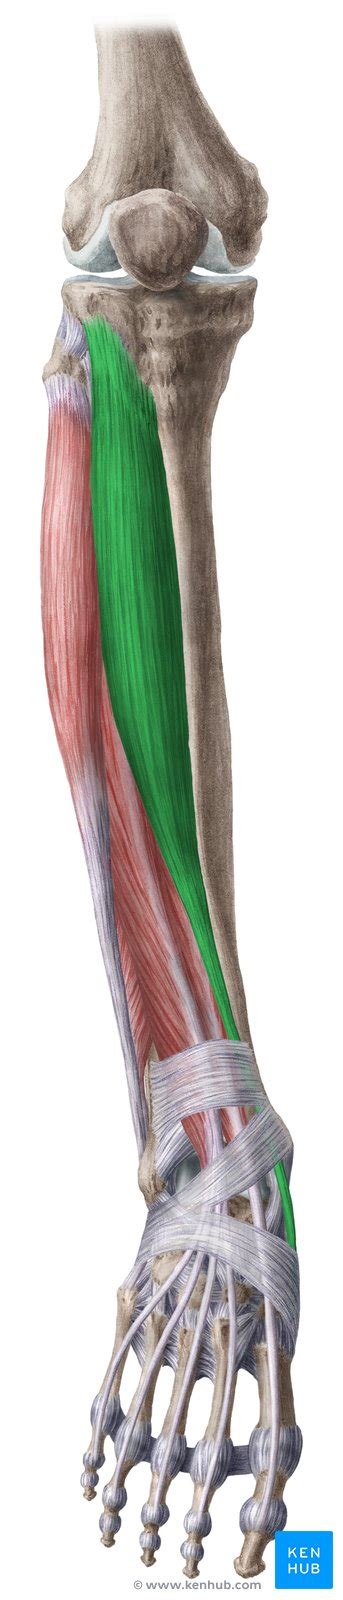 Músculos Anteriores Da Perna Anatomia E Funções Kenhub